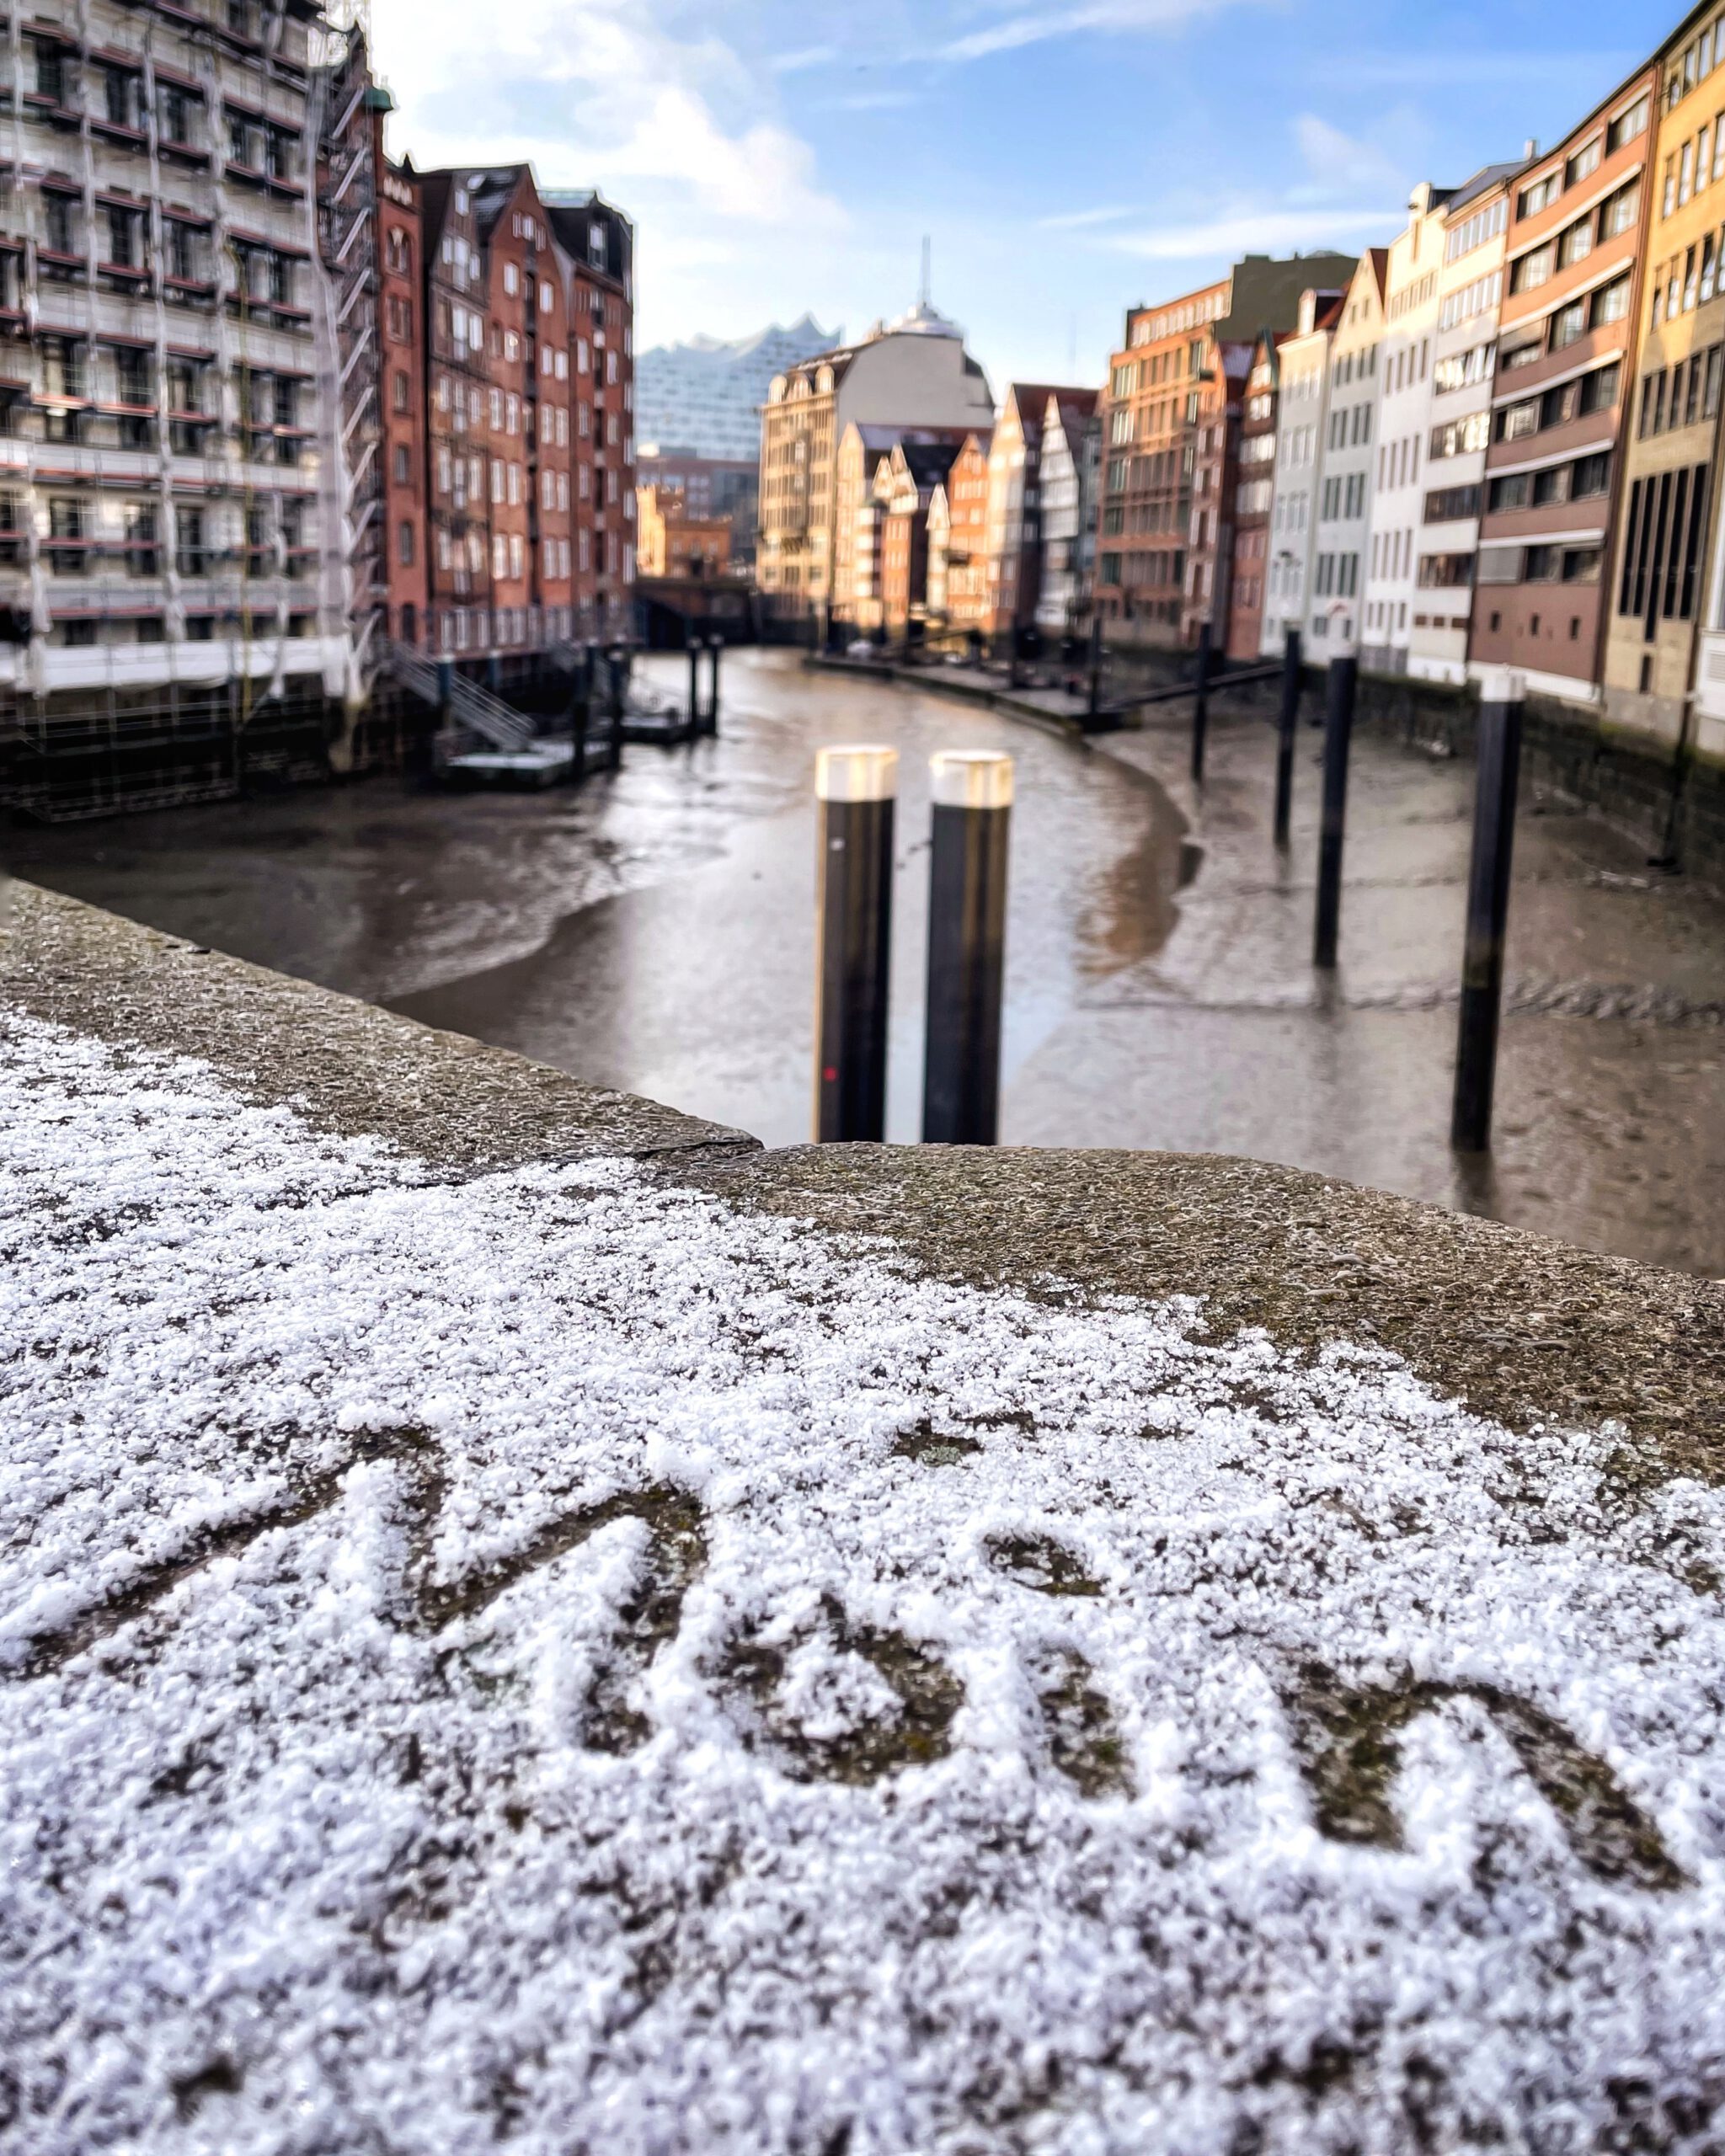 Winter in Hamburg: Fototipps für Hamburg im Winter am Nikolaifleet